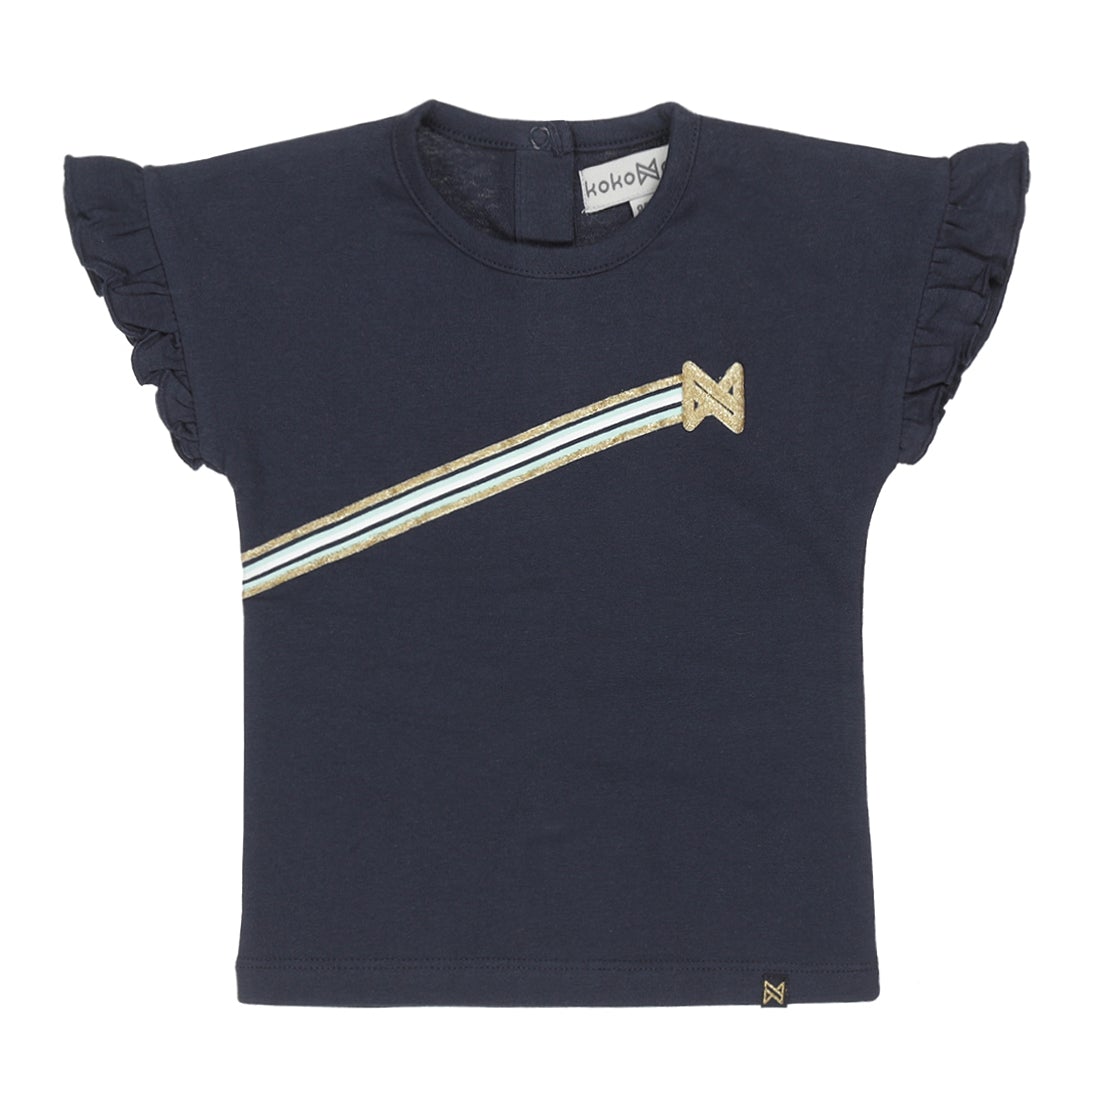 Meisjes T-shirt ss van Koko Noko in de kleur Navy in maat 128.